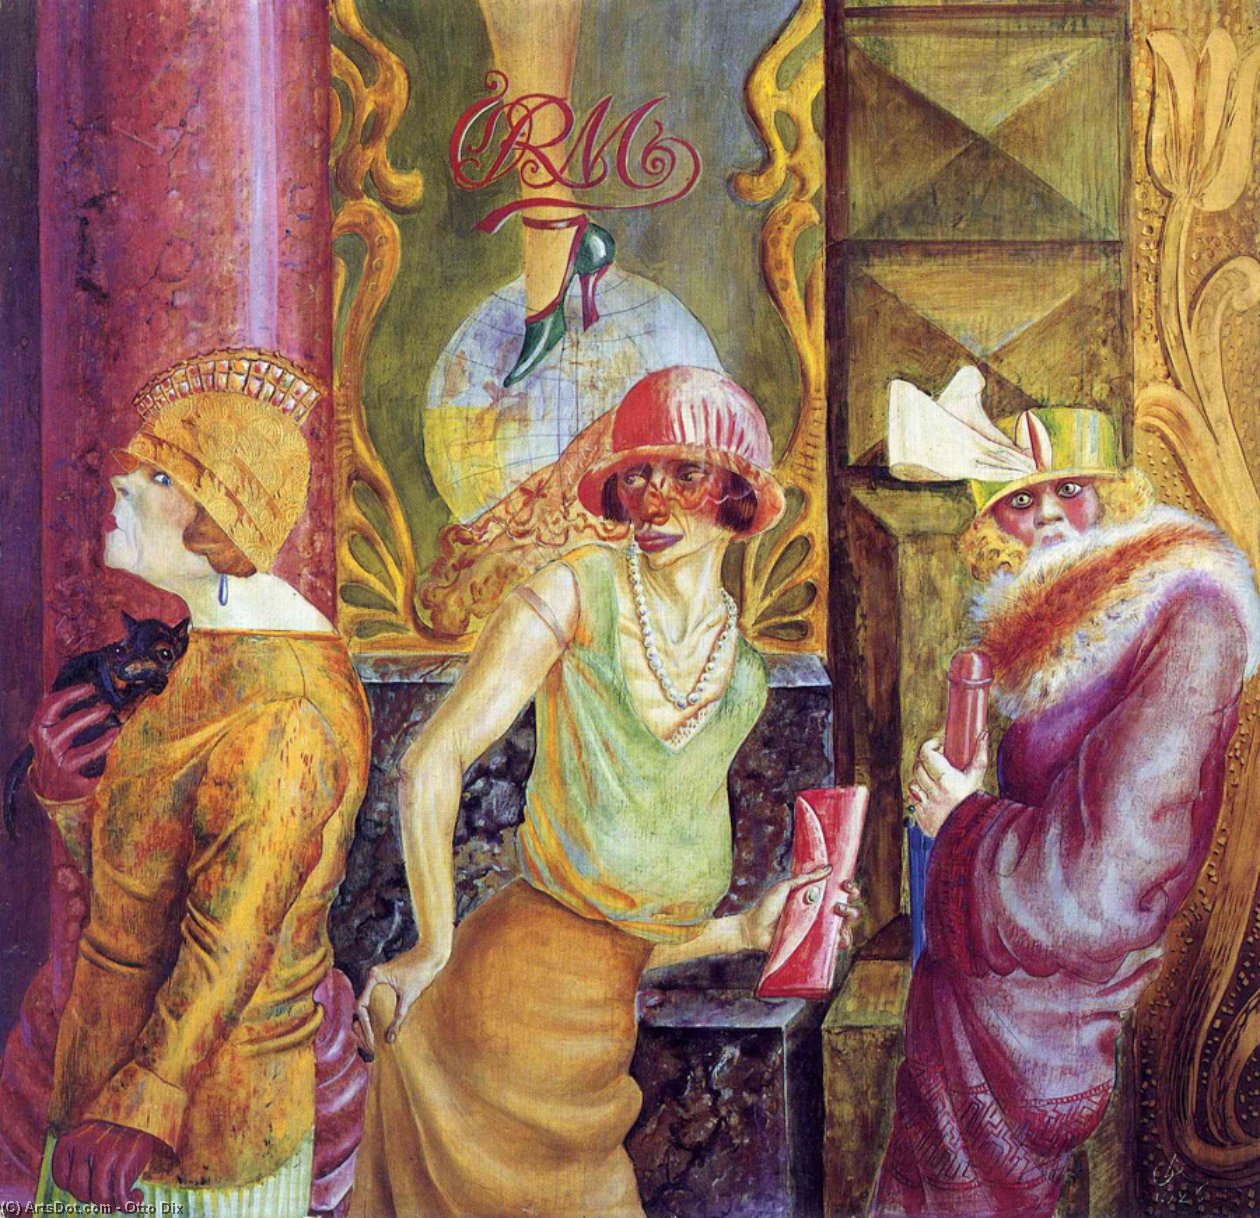 WikiOO.org - Encyclopedia of Fine Arts - Lukisan, Artwork Otto Dix - Three Prostitutes on the Street